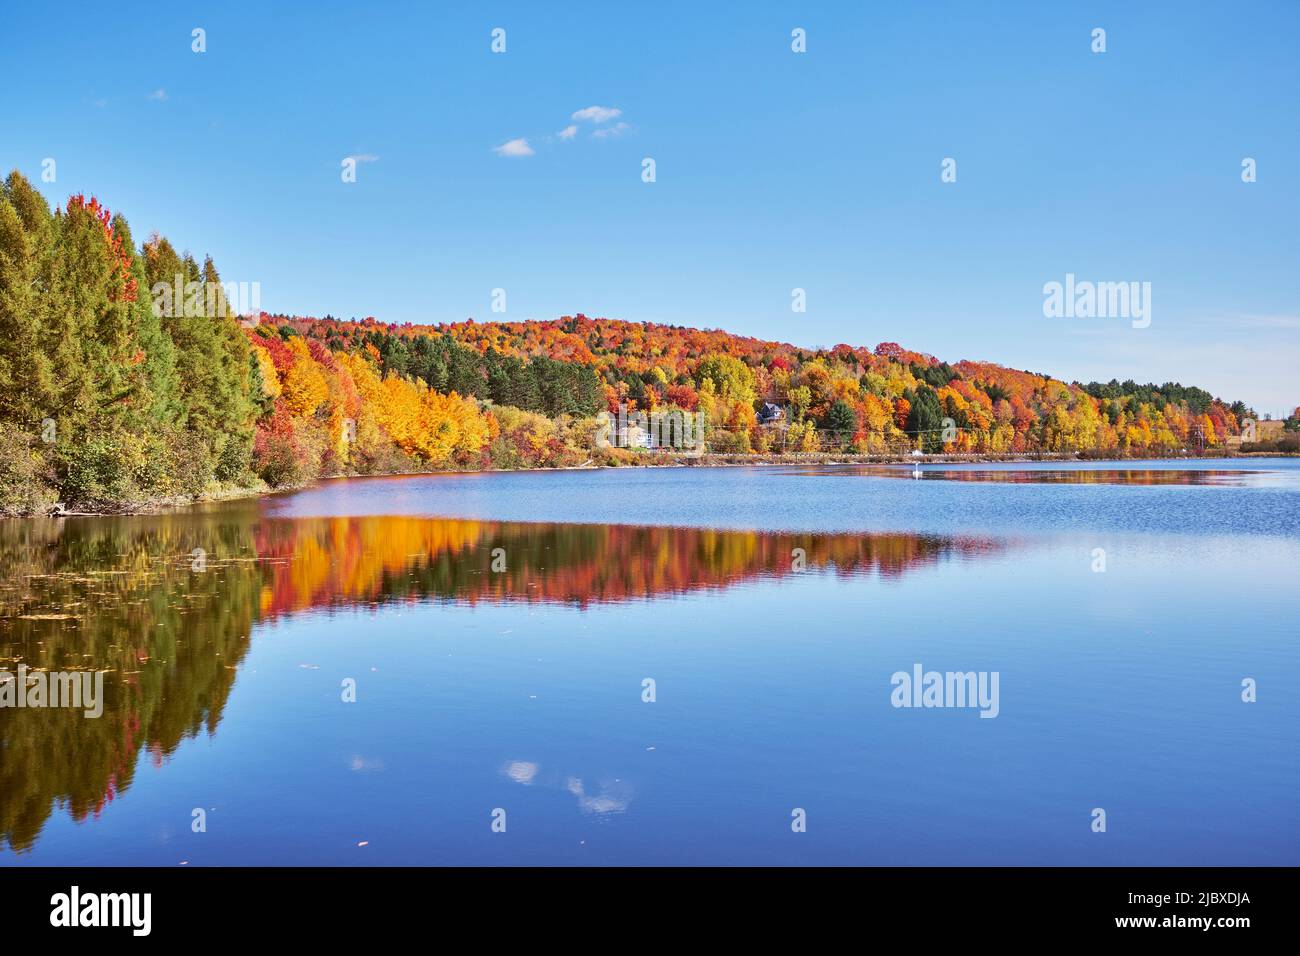 Lac avec forêt colorée pendant la saison d'automne, Estrie, Québec, Canada, 2019 Banque D'Images